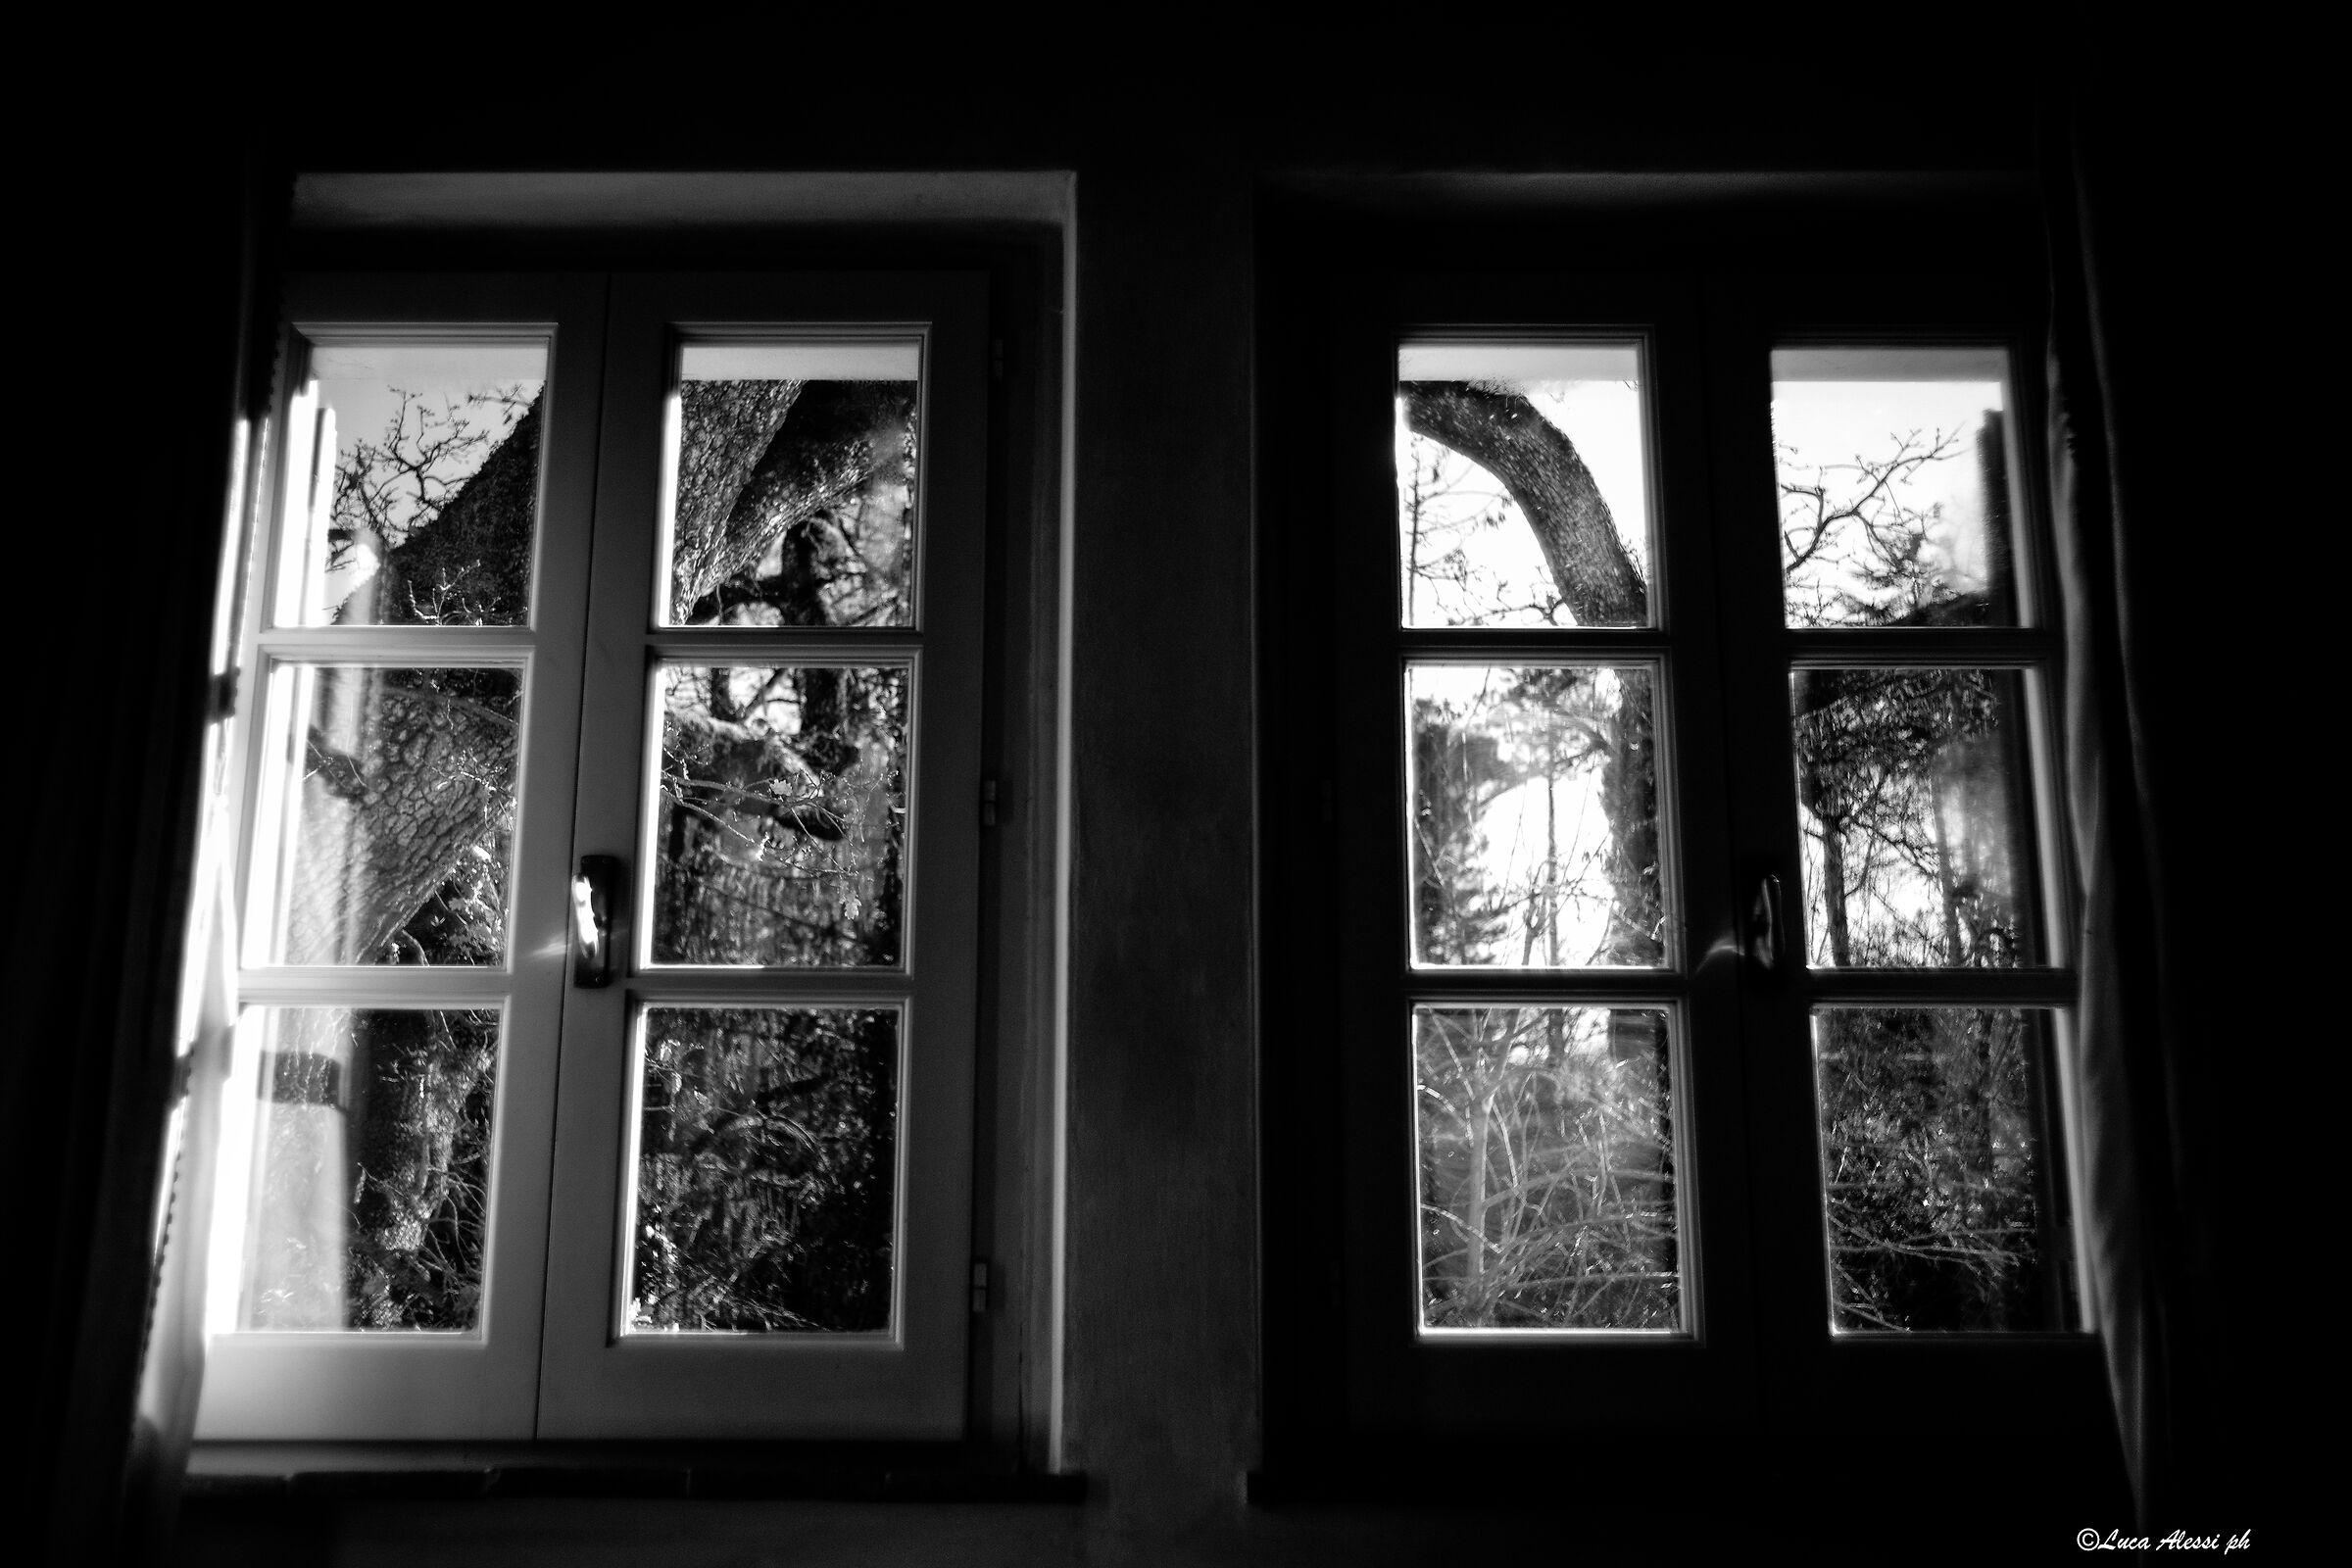 Silence pierces the windows...